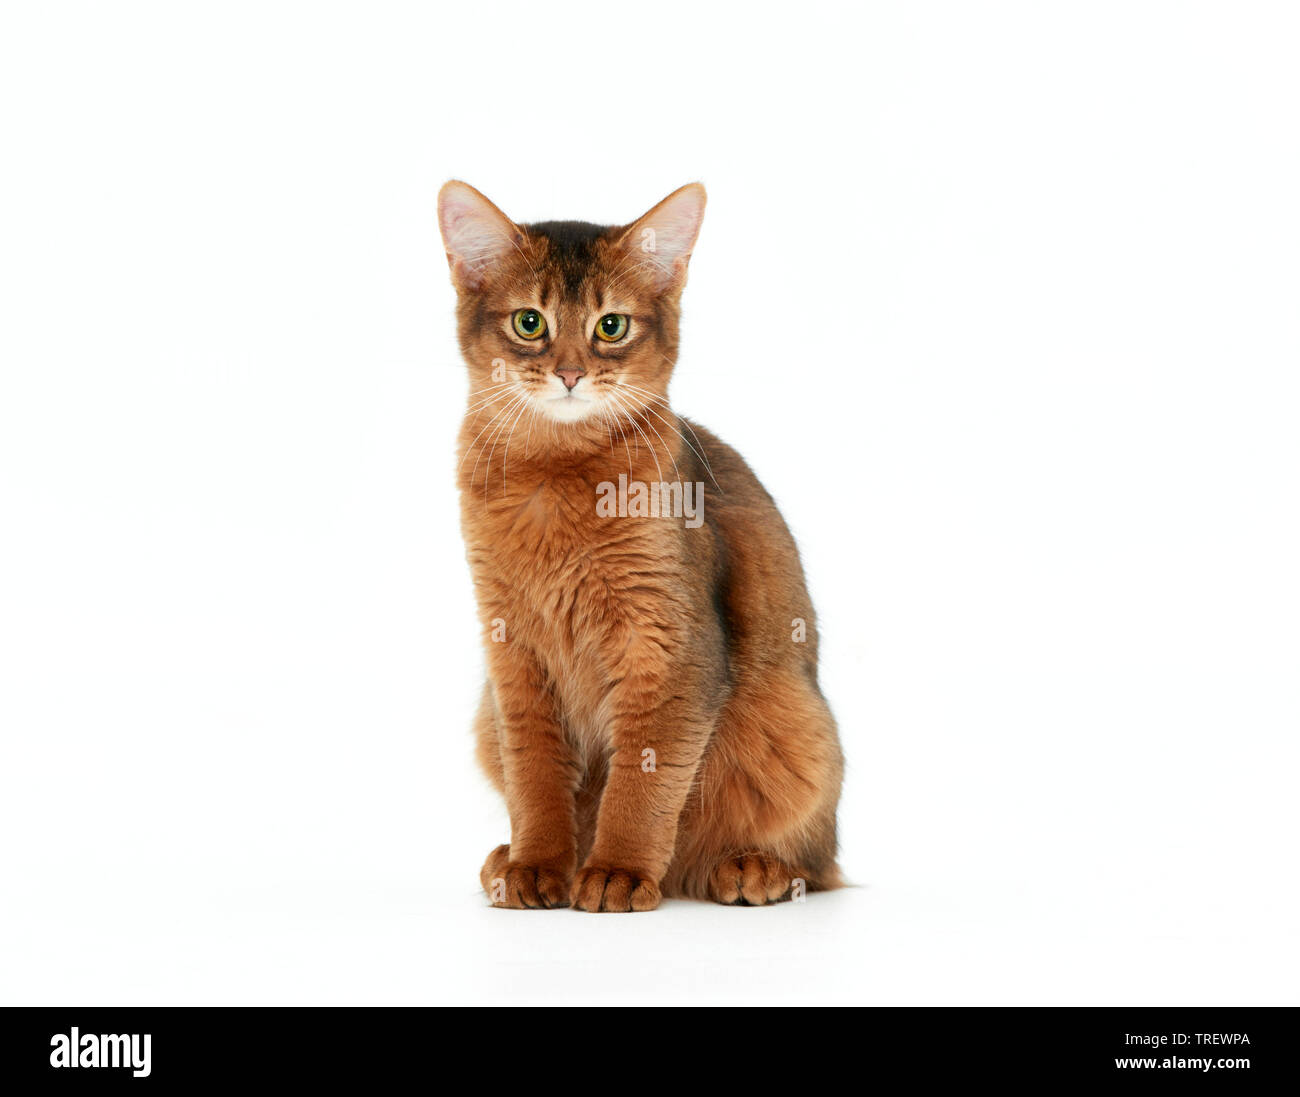 Somali cat. Chaton assis, vu de face. Studio photo sur un fond blanc. Banque D'Images